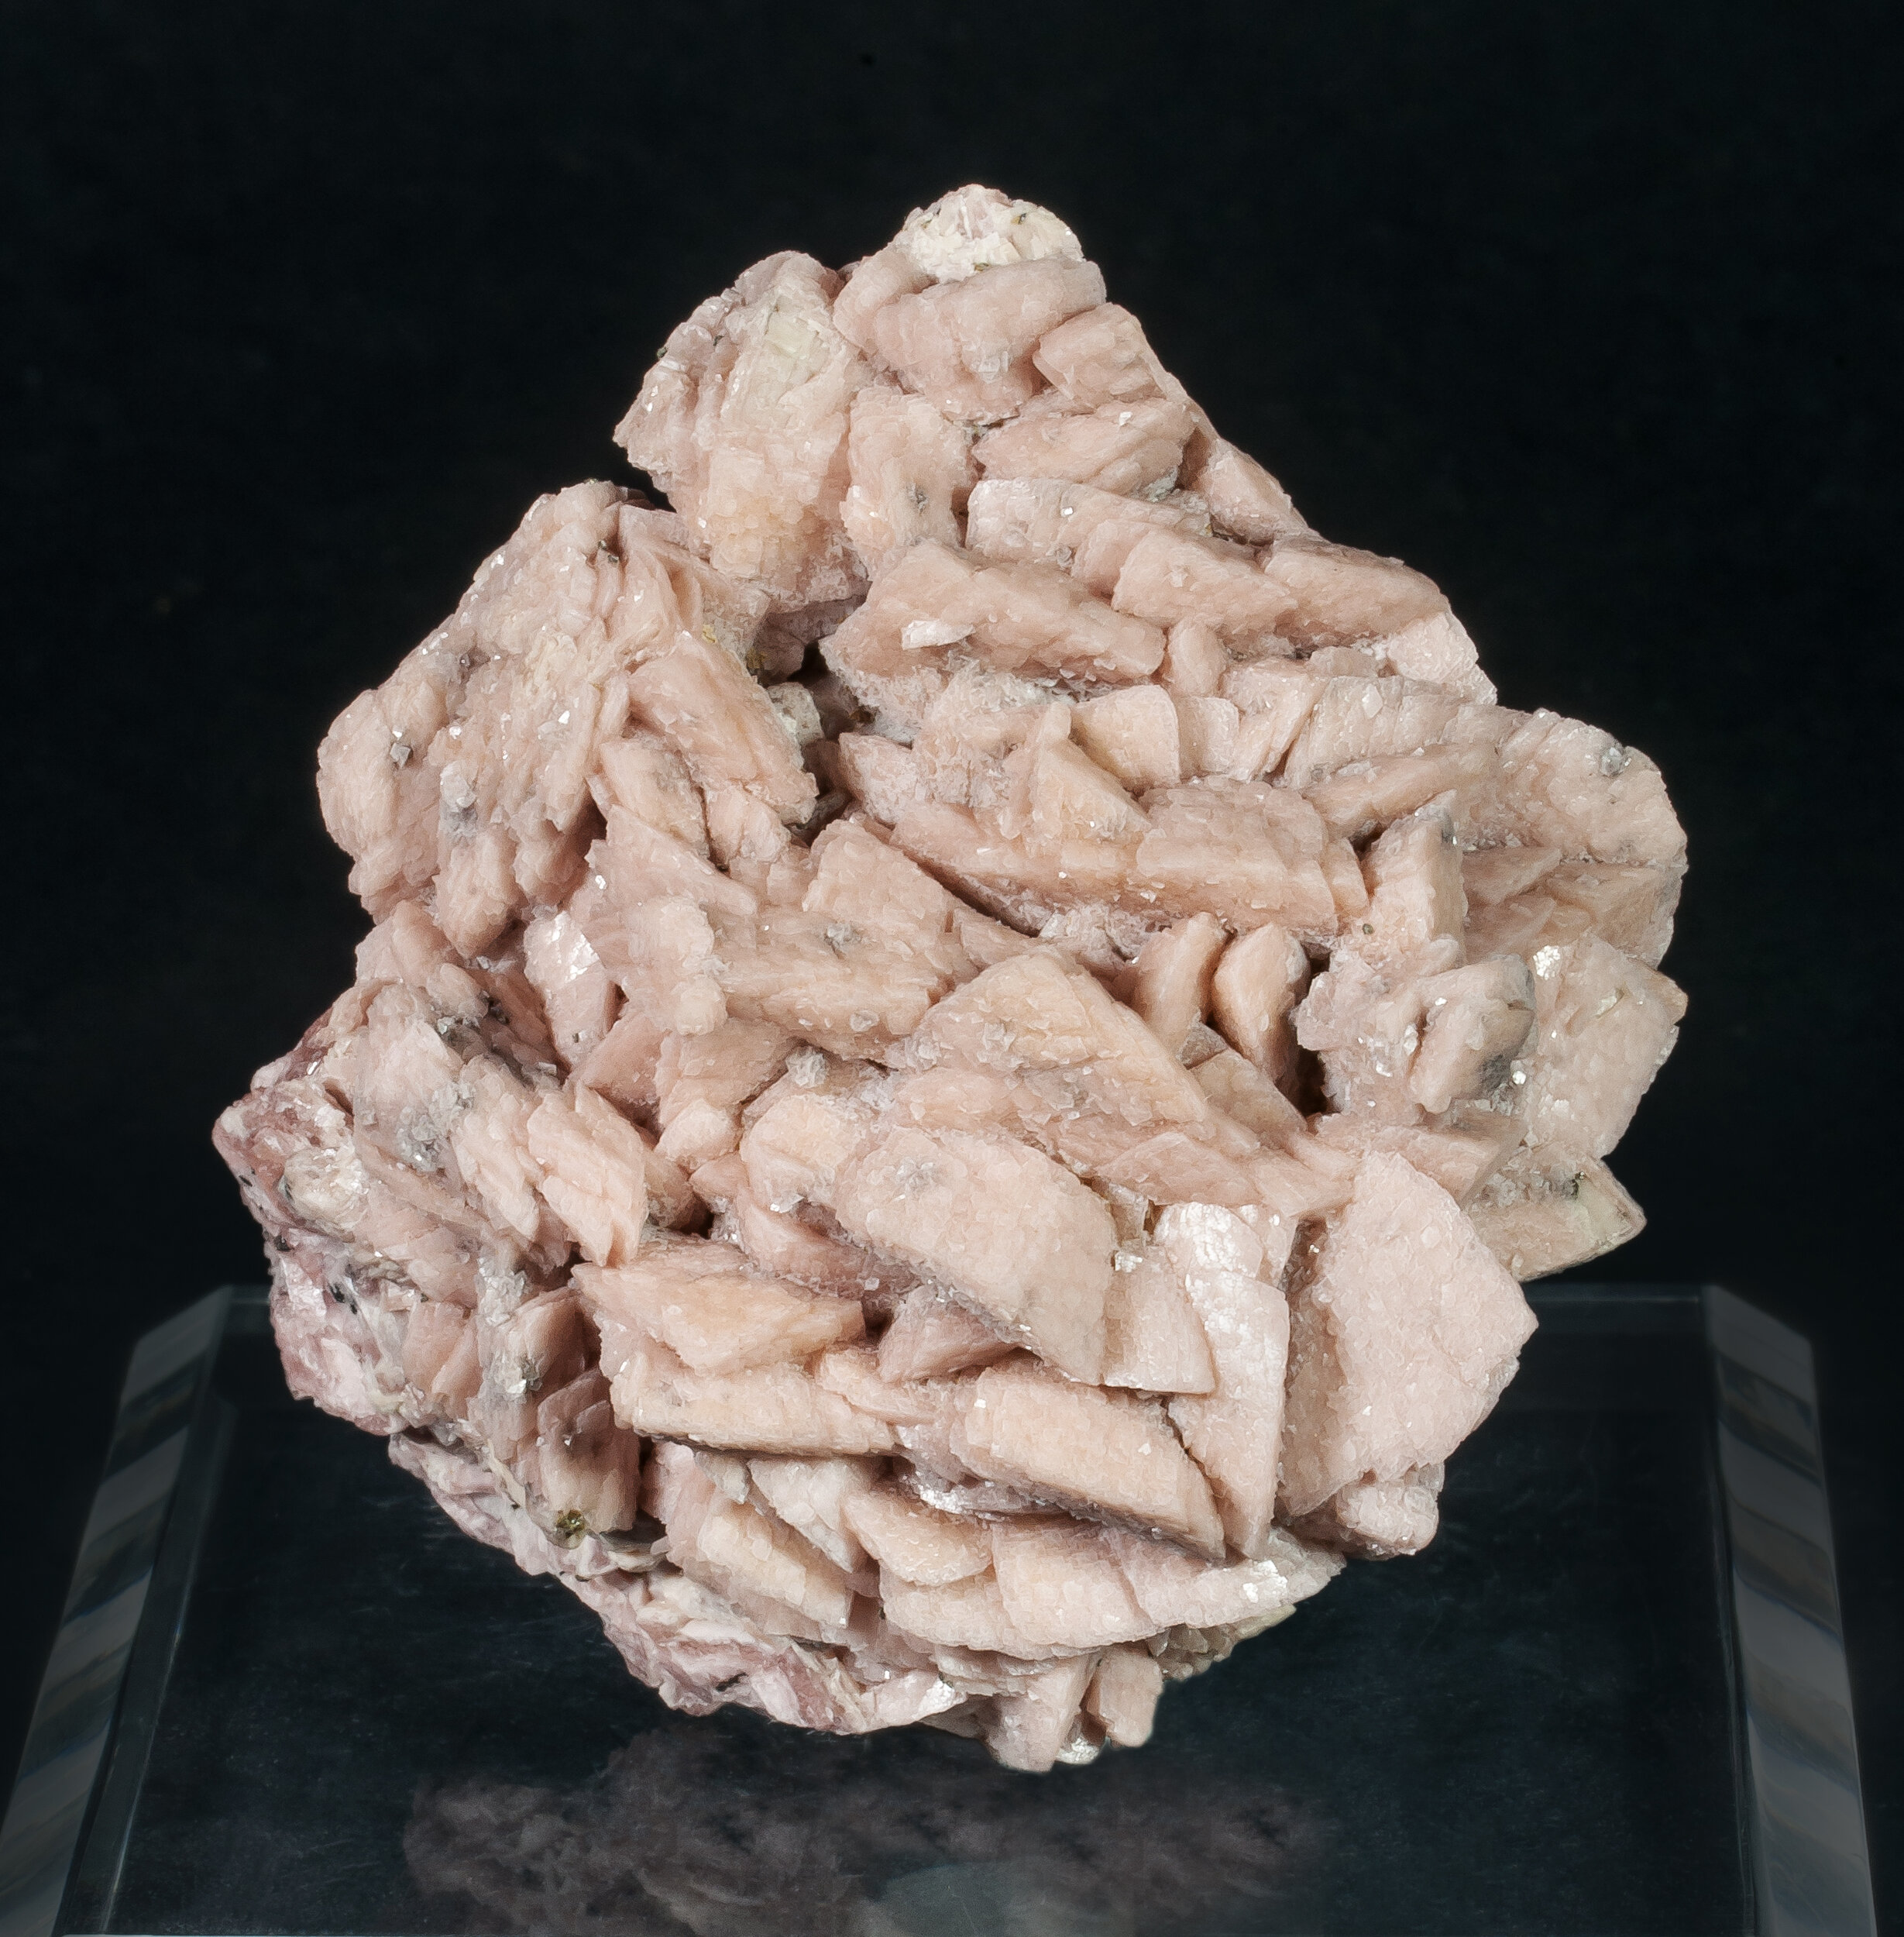 specimens/s_imagesAQ1/Rhodochrosite-EPF93AQ1f.jpg